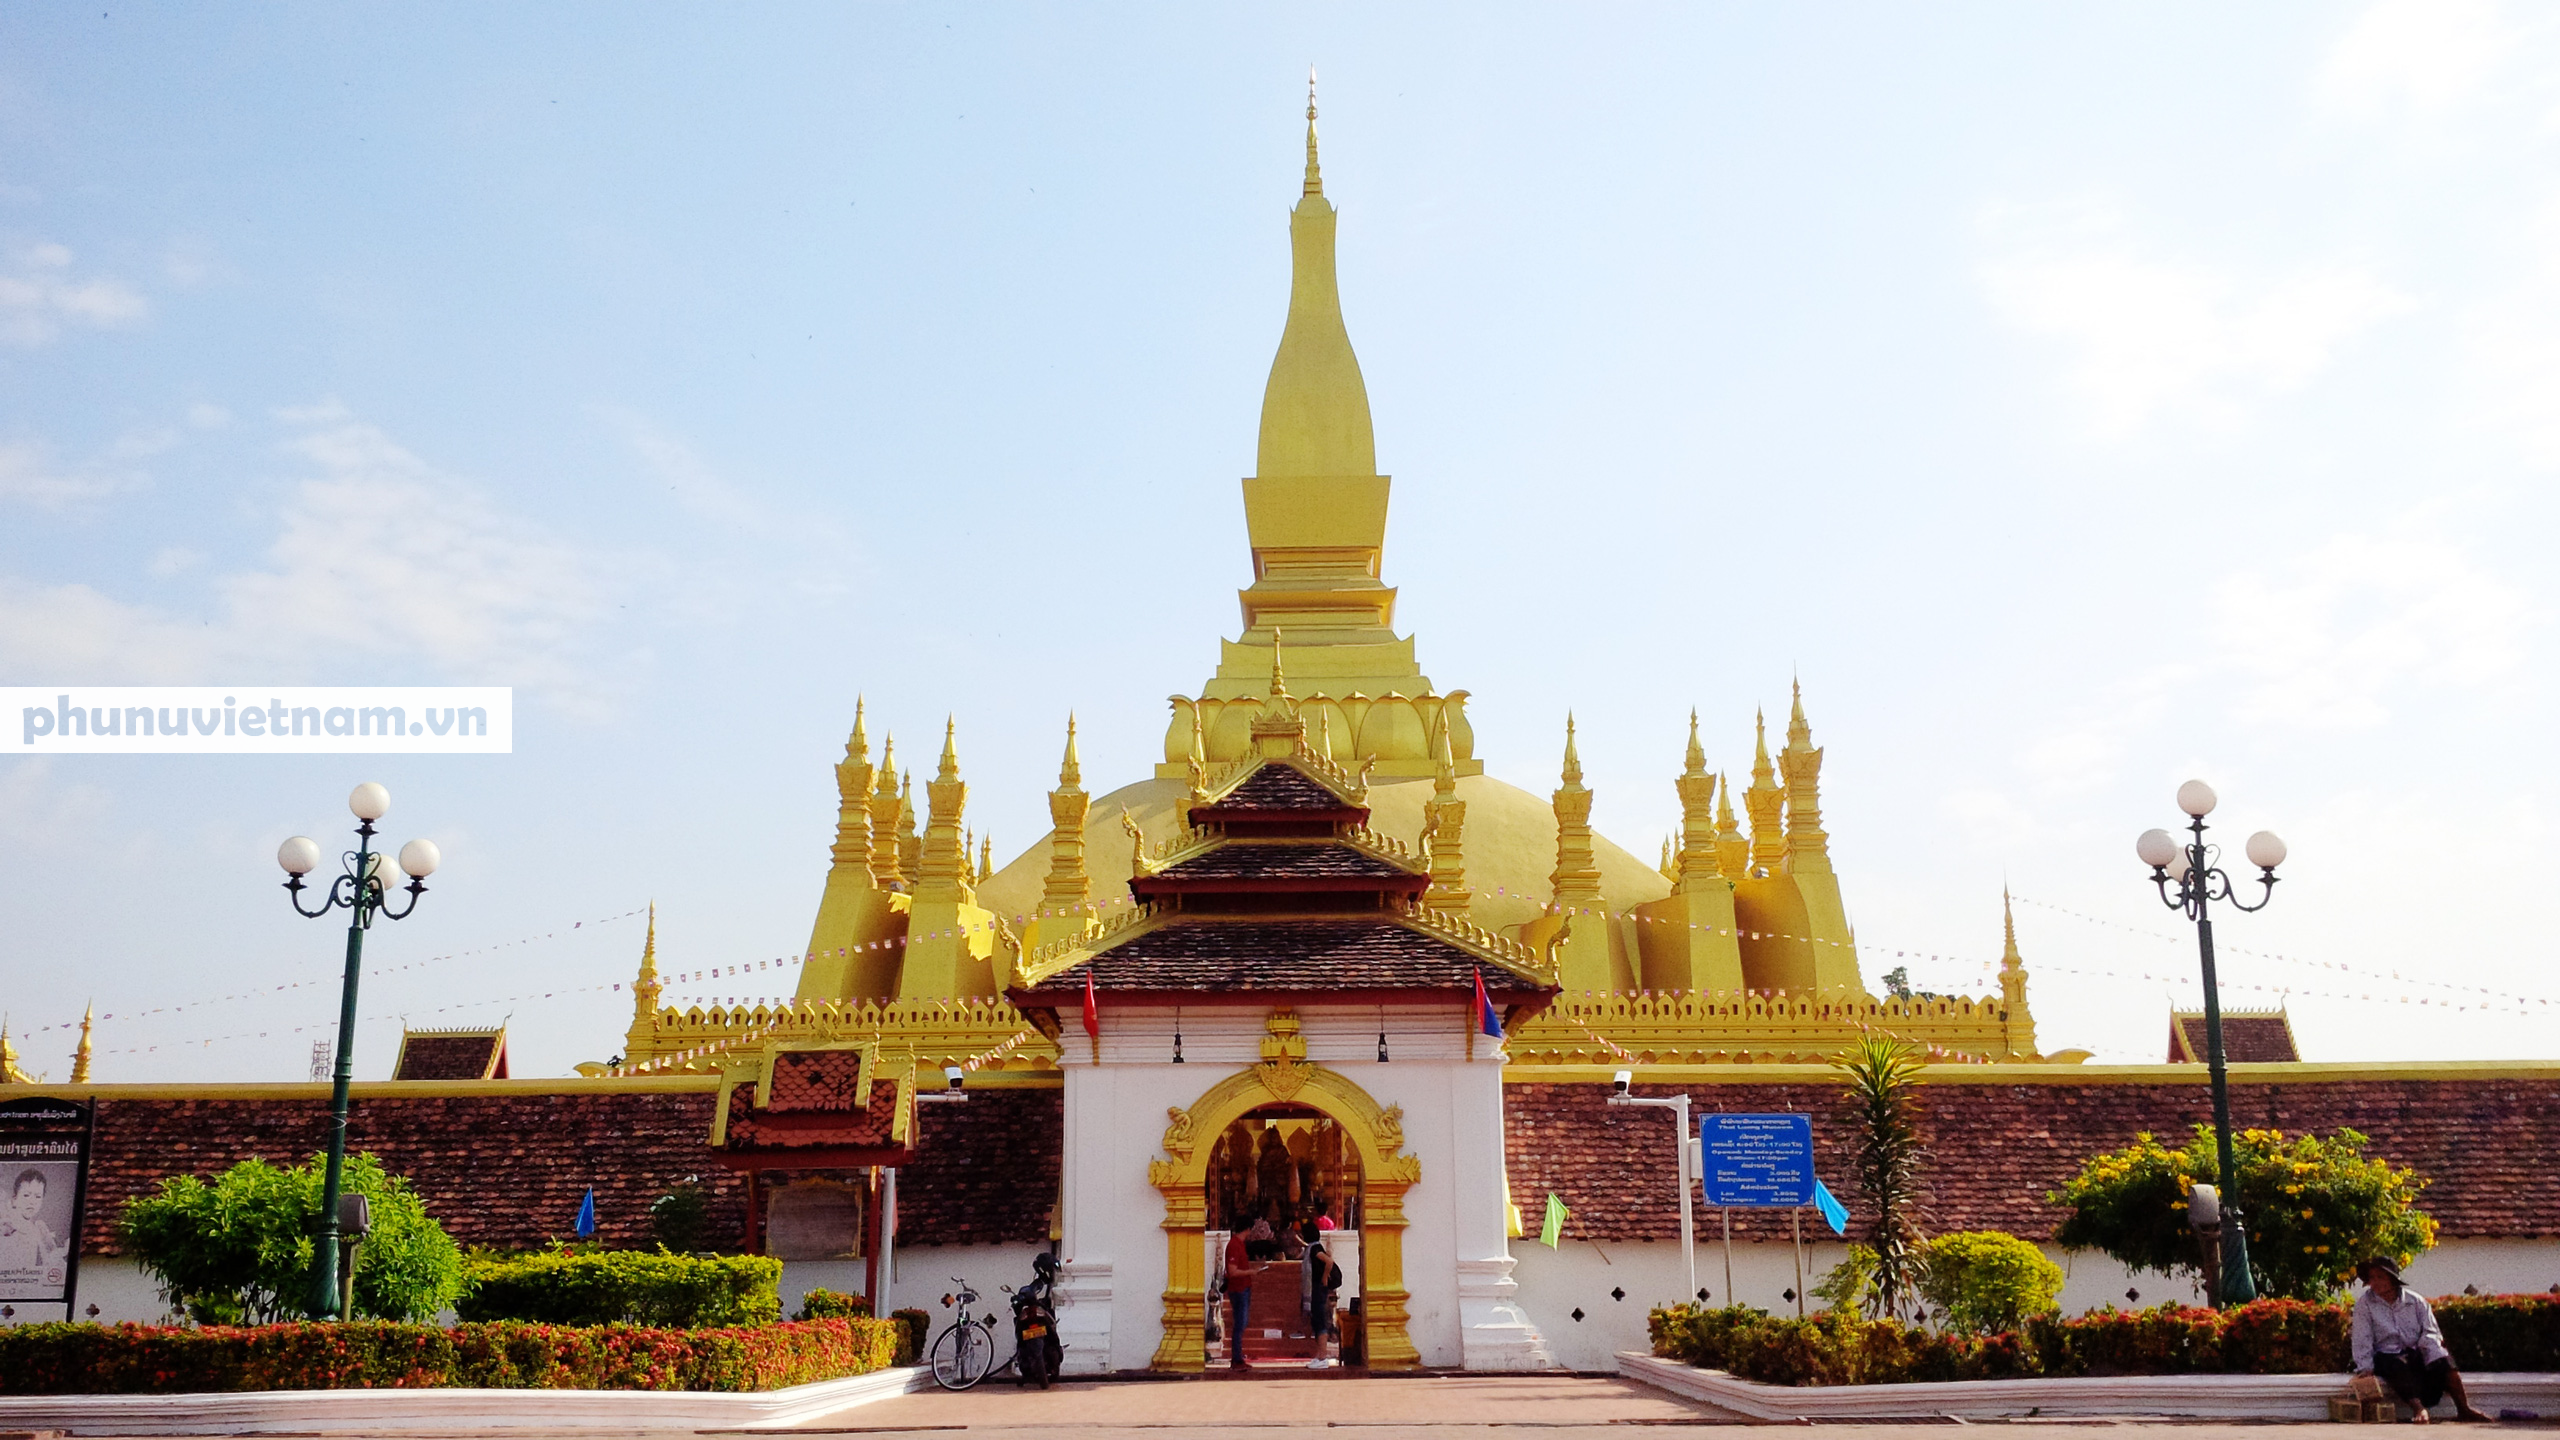 Chiêm ngưỡng ngôi tháp vàng lớn nhất của Lào, gần 500 tuổi tráng lệ giữa đất trời - Ảnh 1.